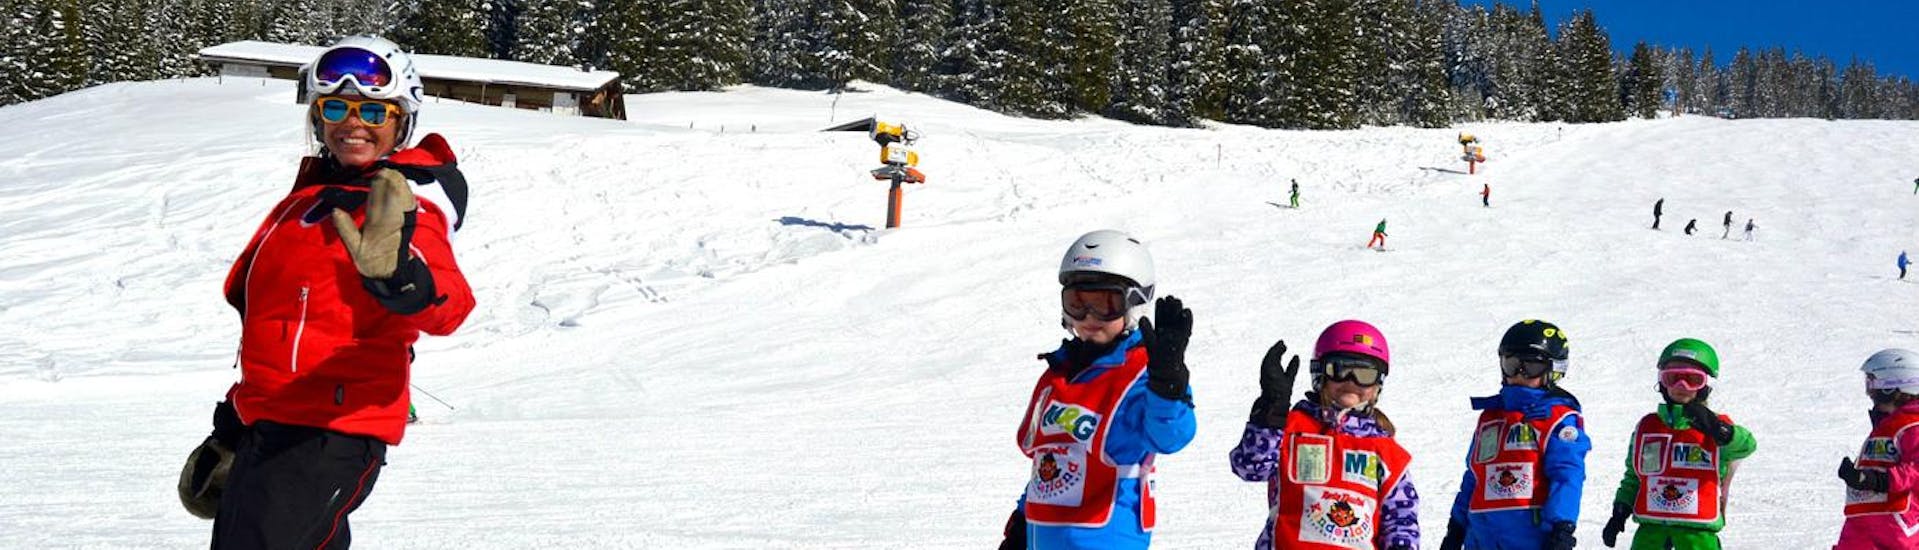 Cours de ski pour Enfants (dès 3 ans) - Tous Niveaux journée complète.